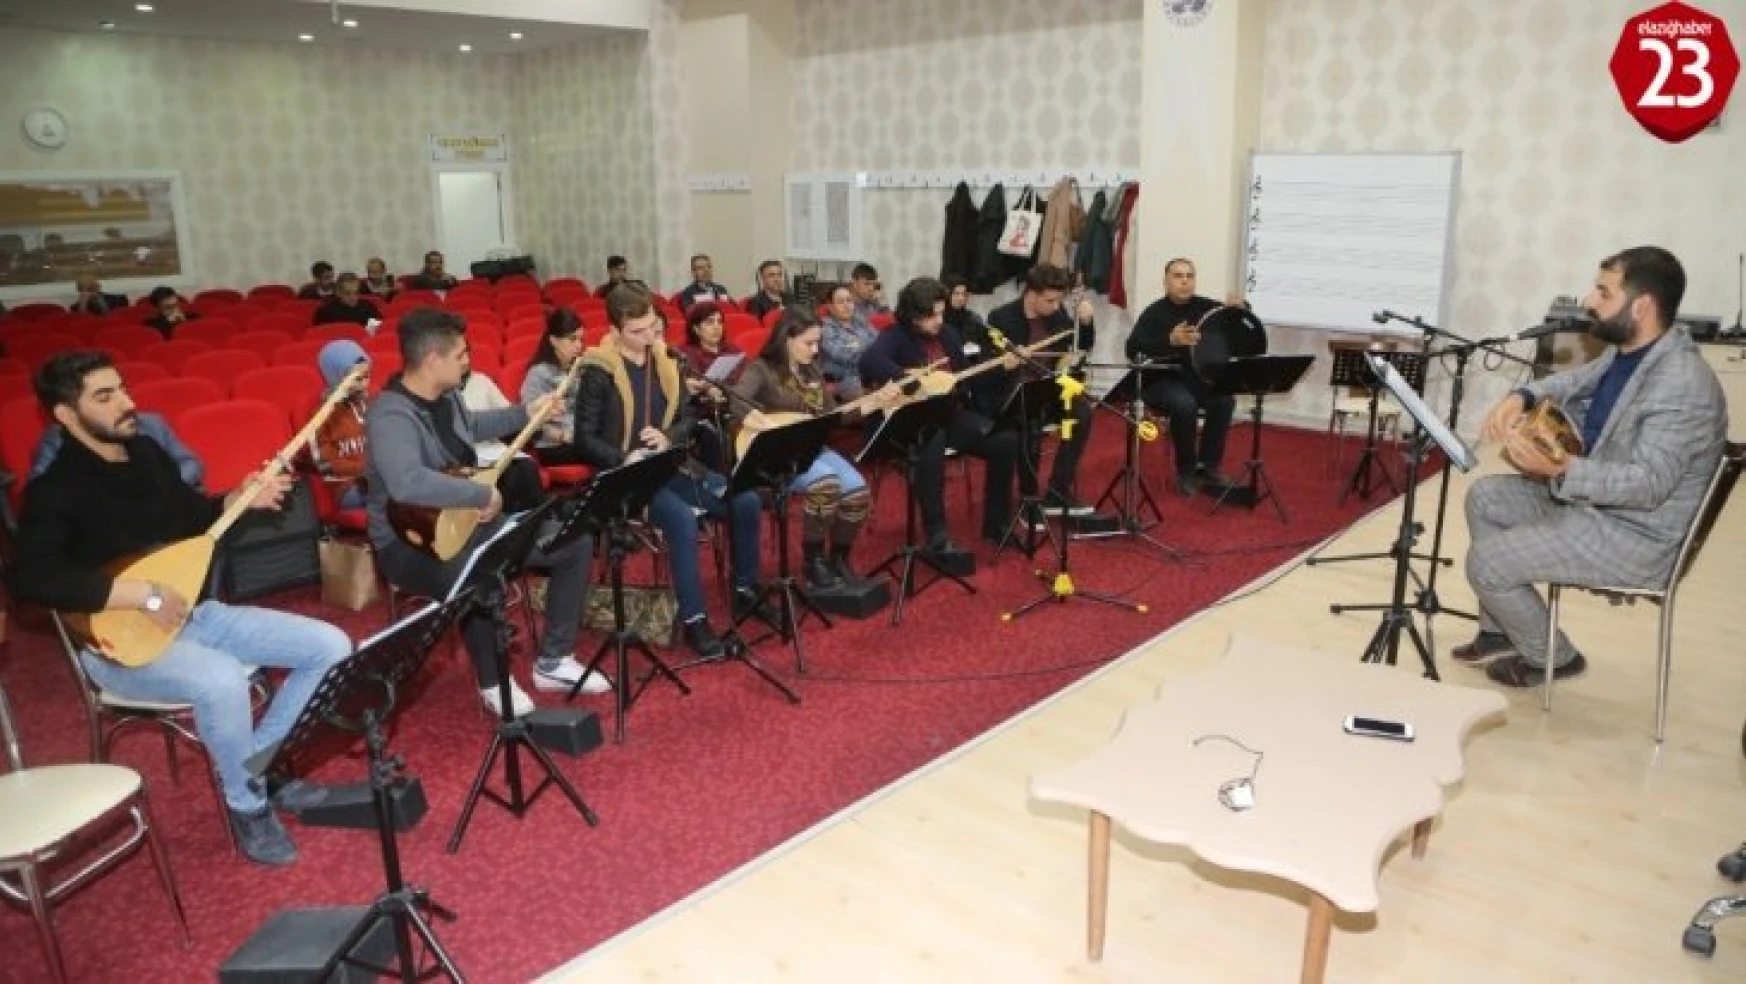 Elazığ Belediyesi Türk Halk Müziği Korosu kuruldu